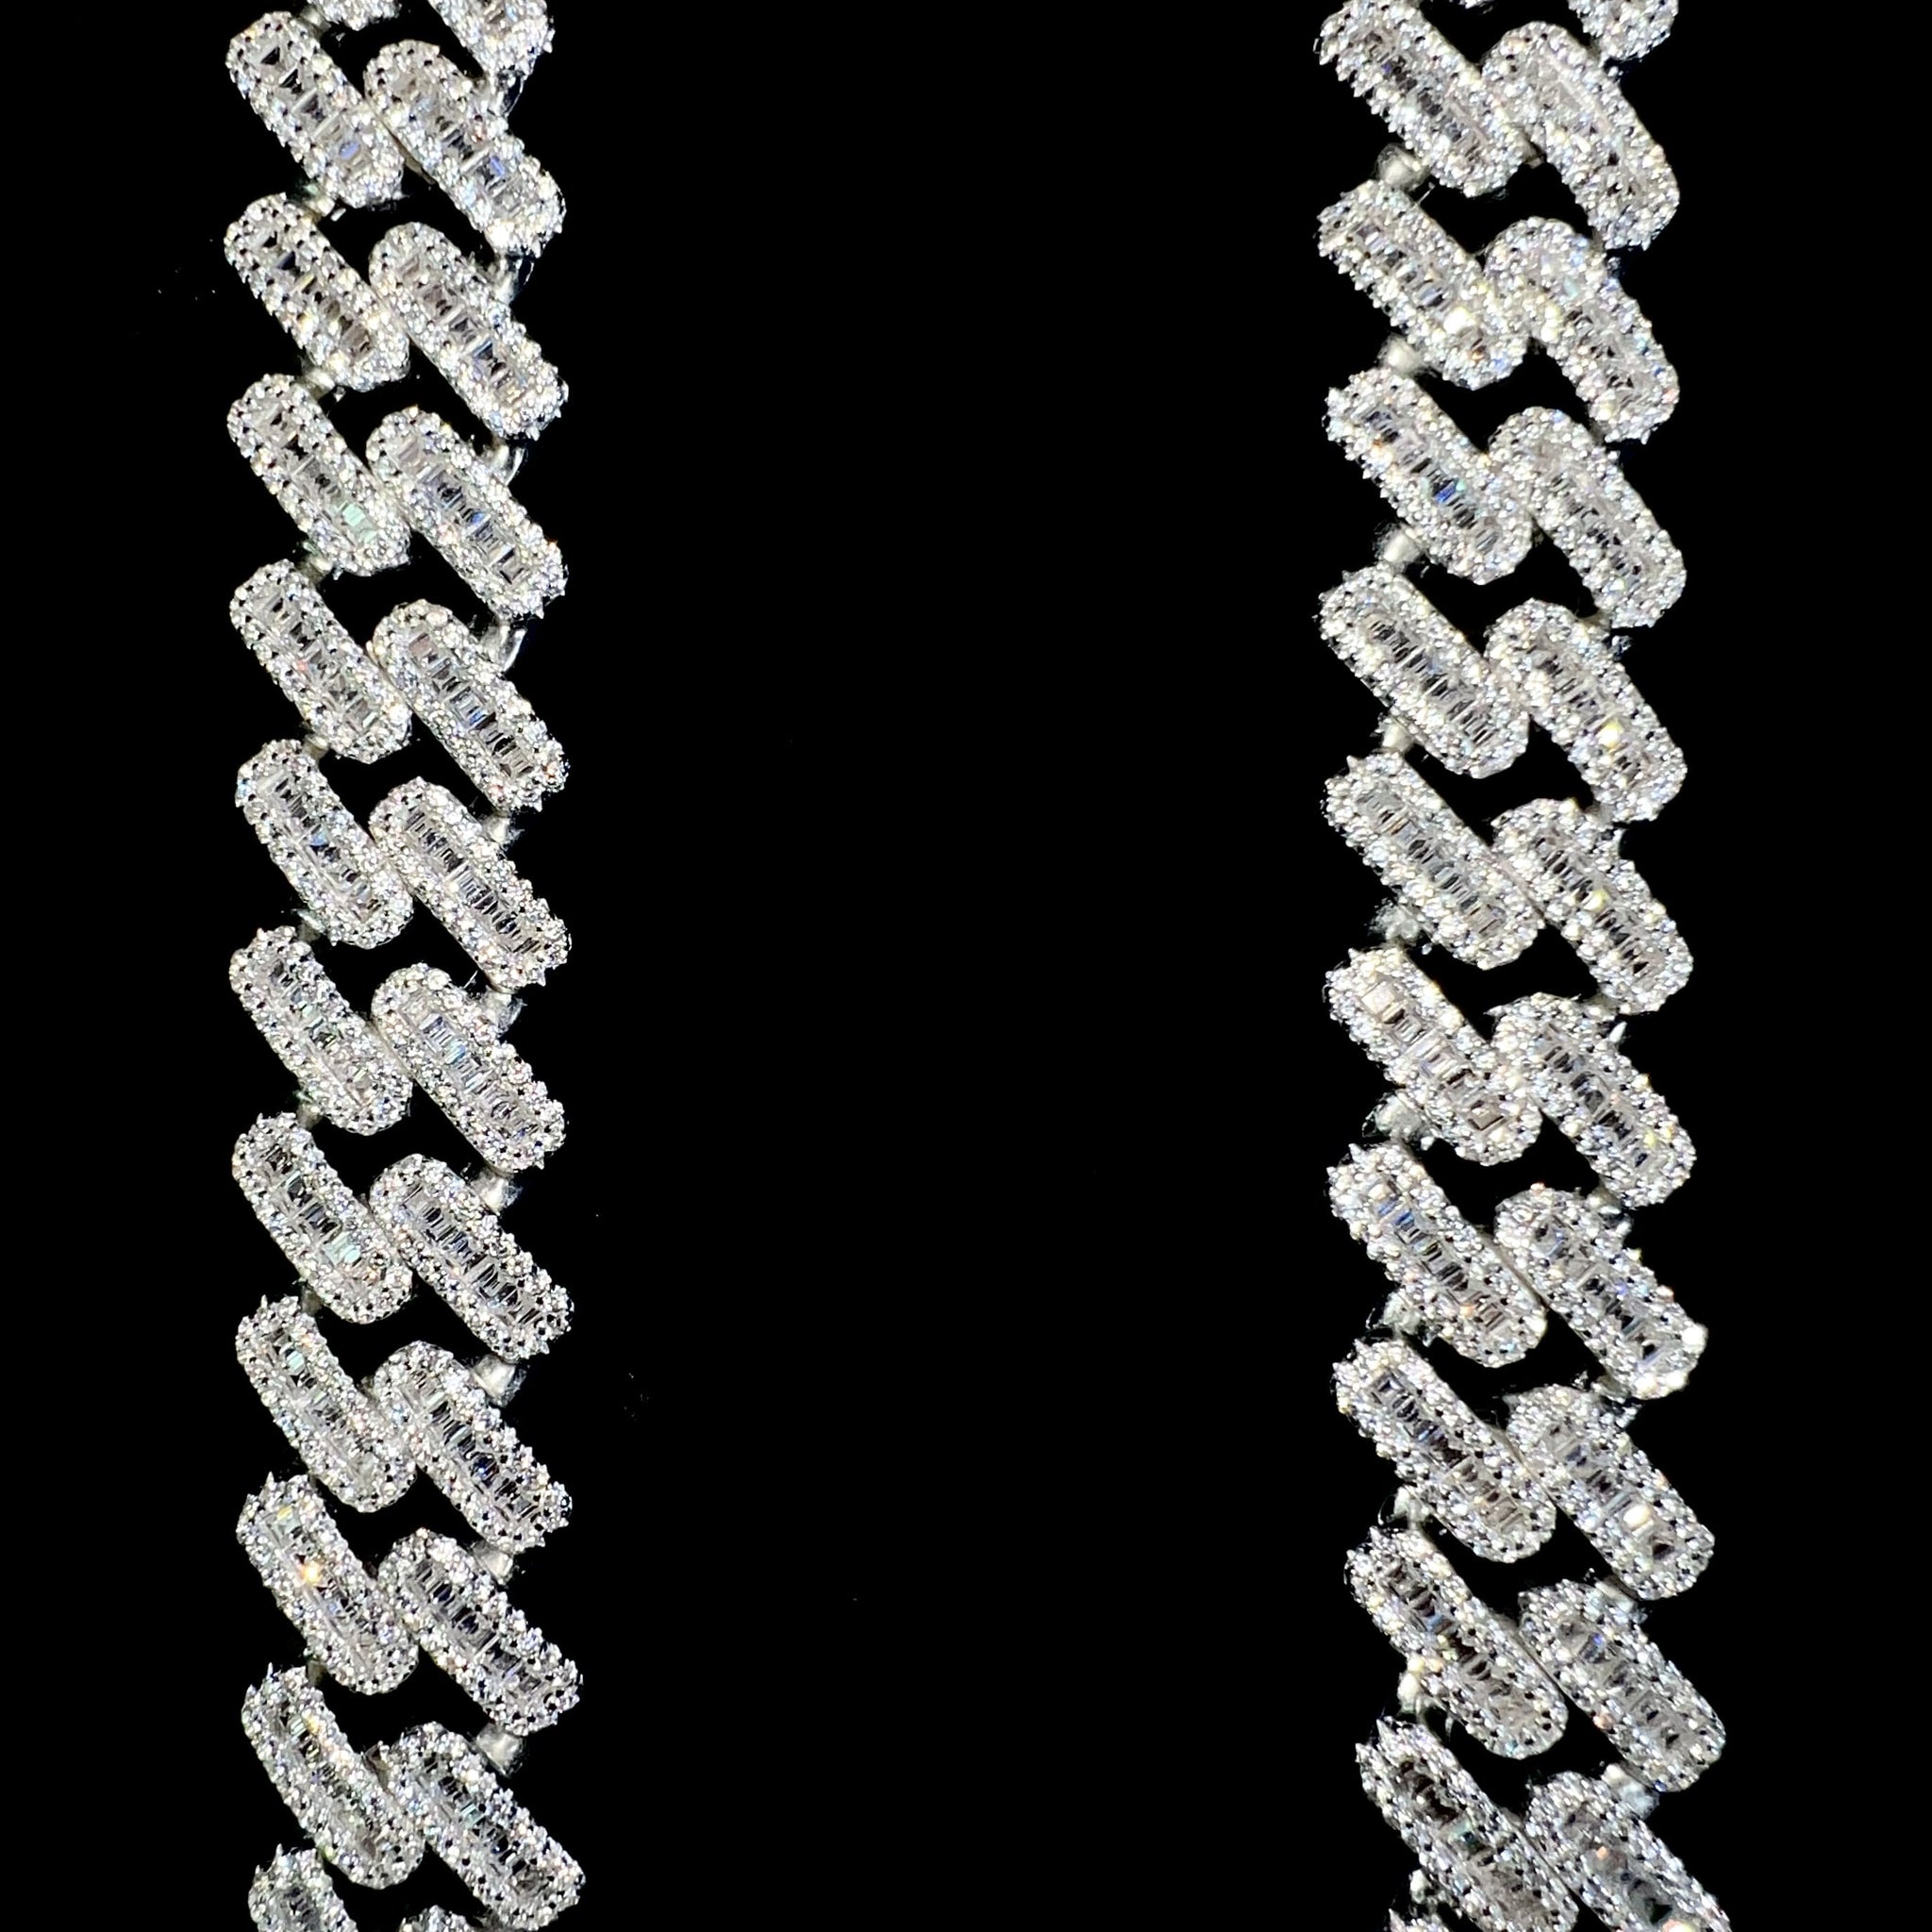 Baguette Cuban Prong Link Chain - 60cm / 15mm - Silver 925 - Sehgal Dubai Collection